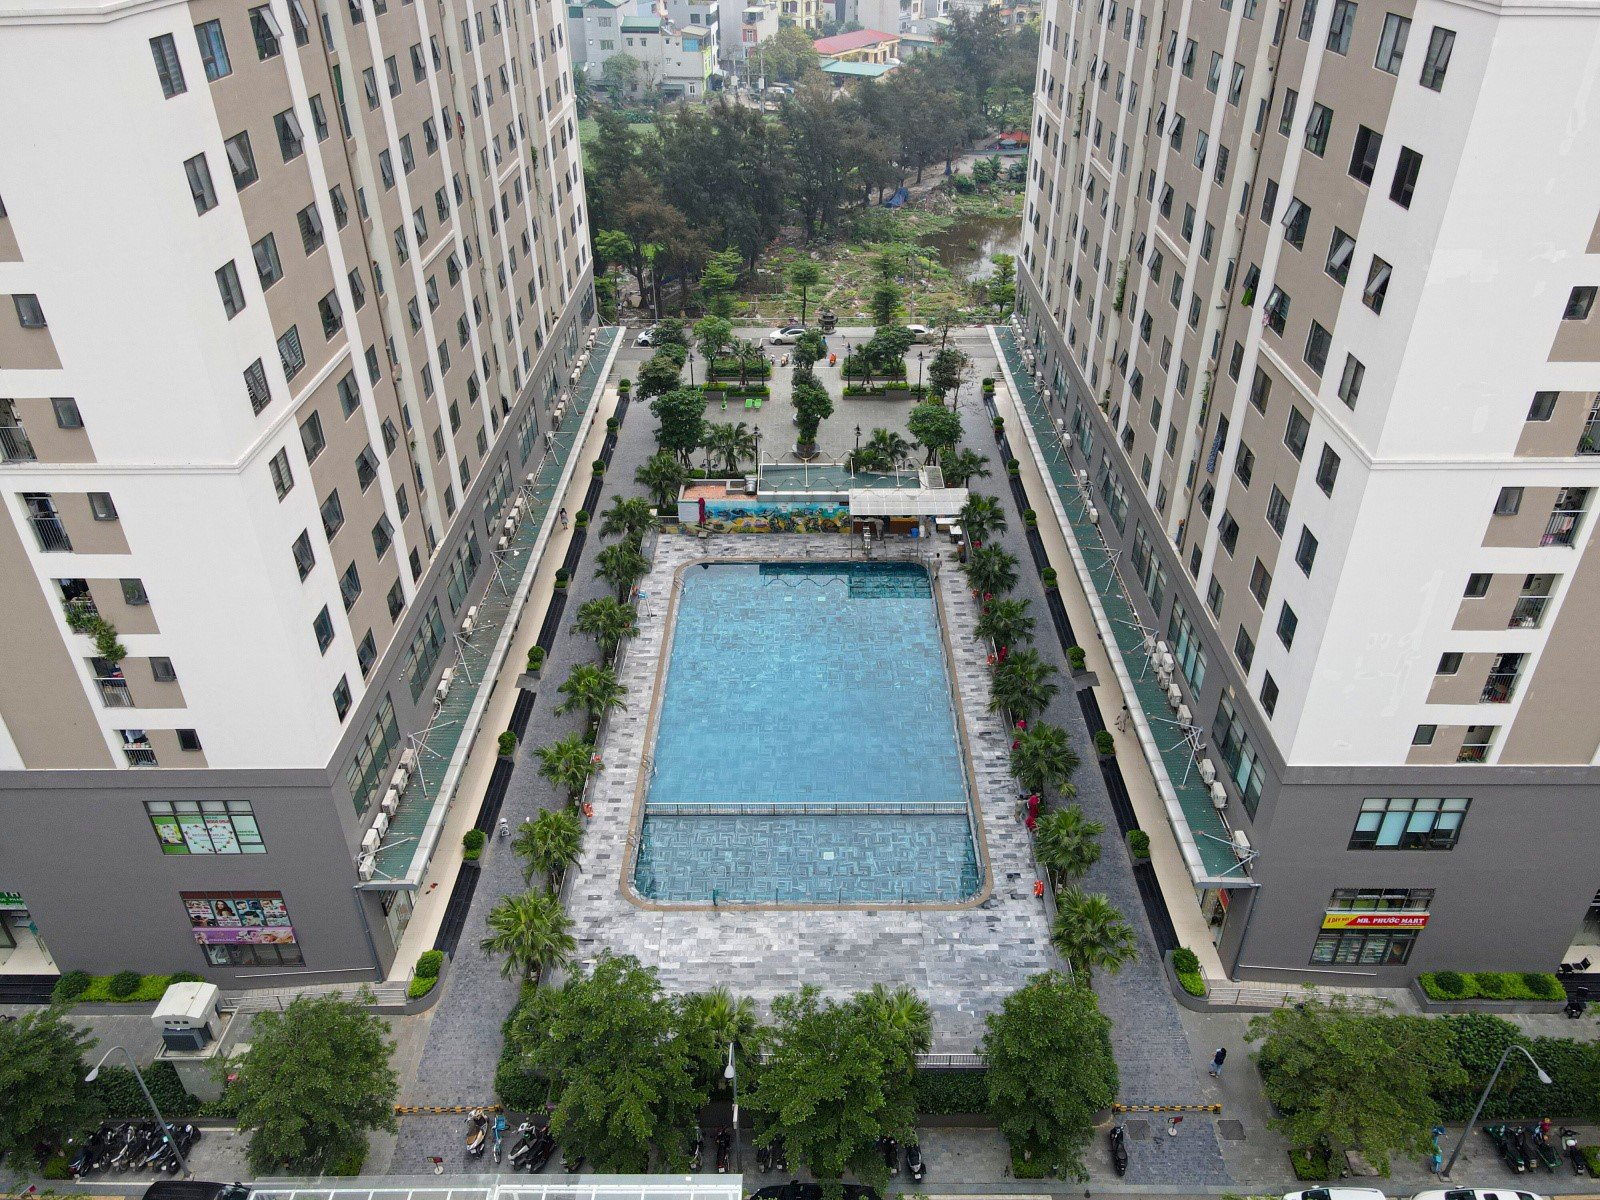 danh-sach-cac-ngan-hang-co-phong-giao-dich-gan-chung-cu-iec-residences-onehousing-2